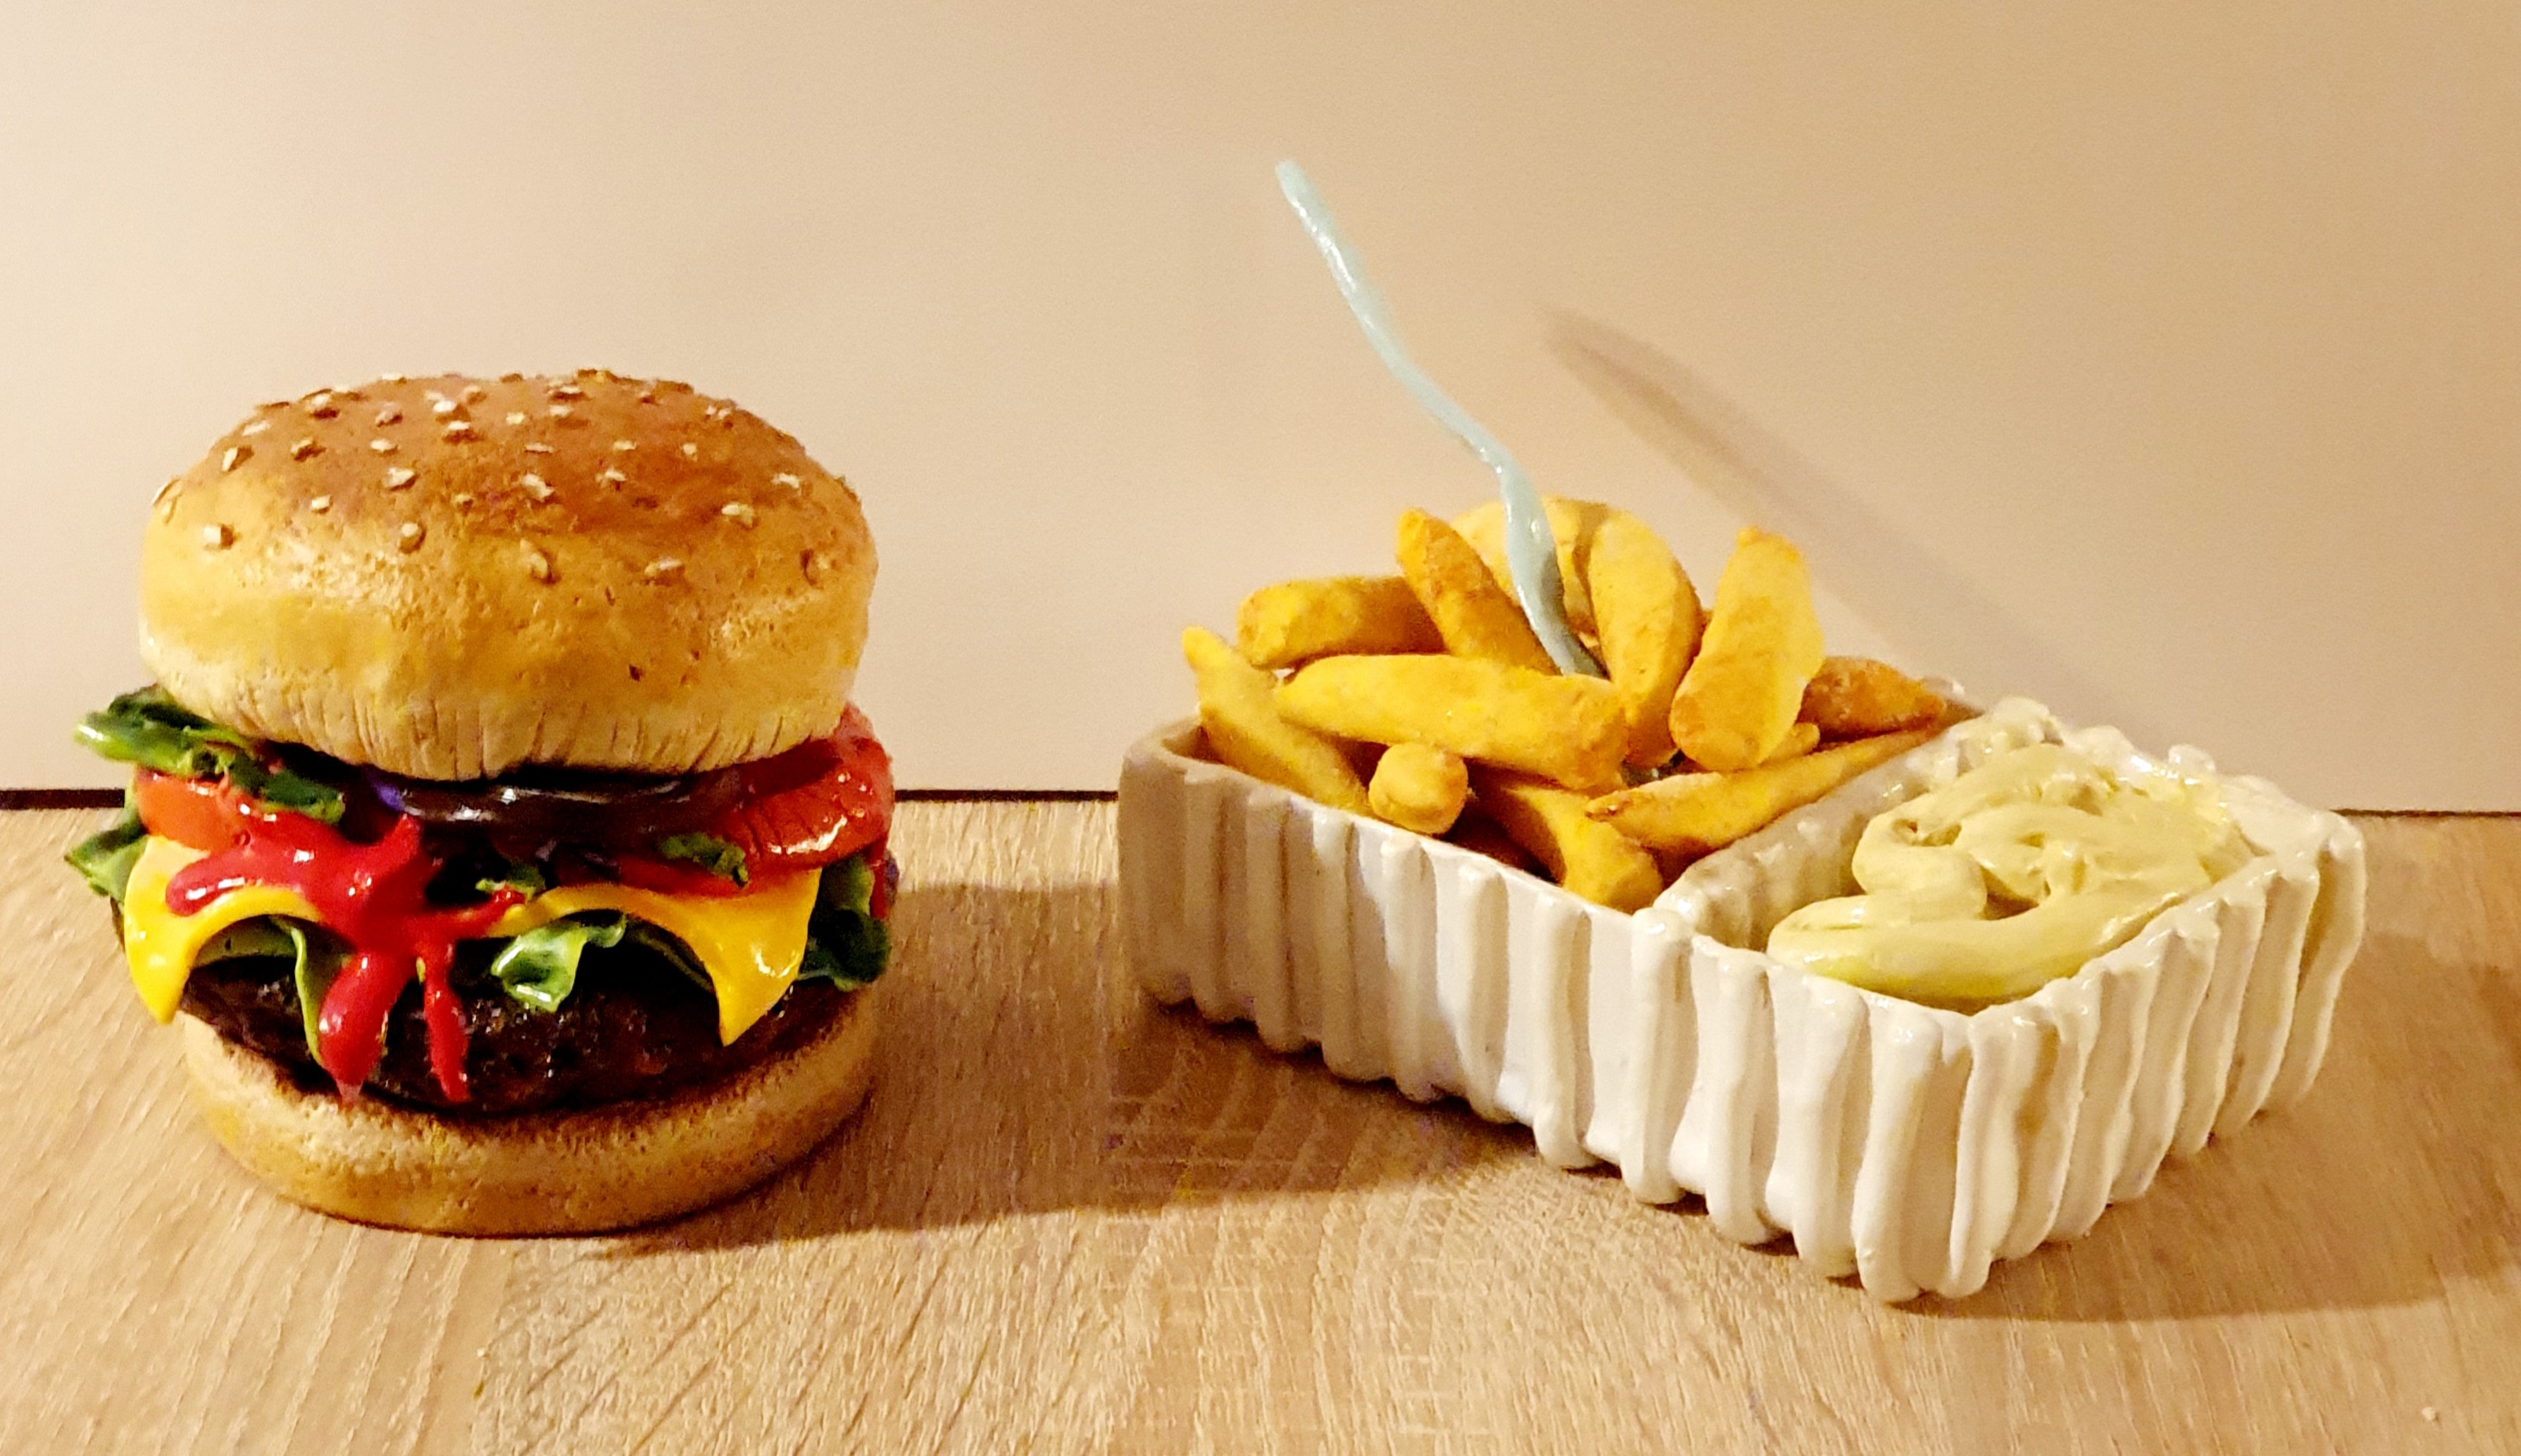 Hamburger and fries